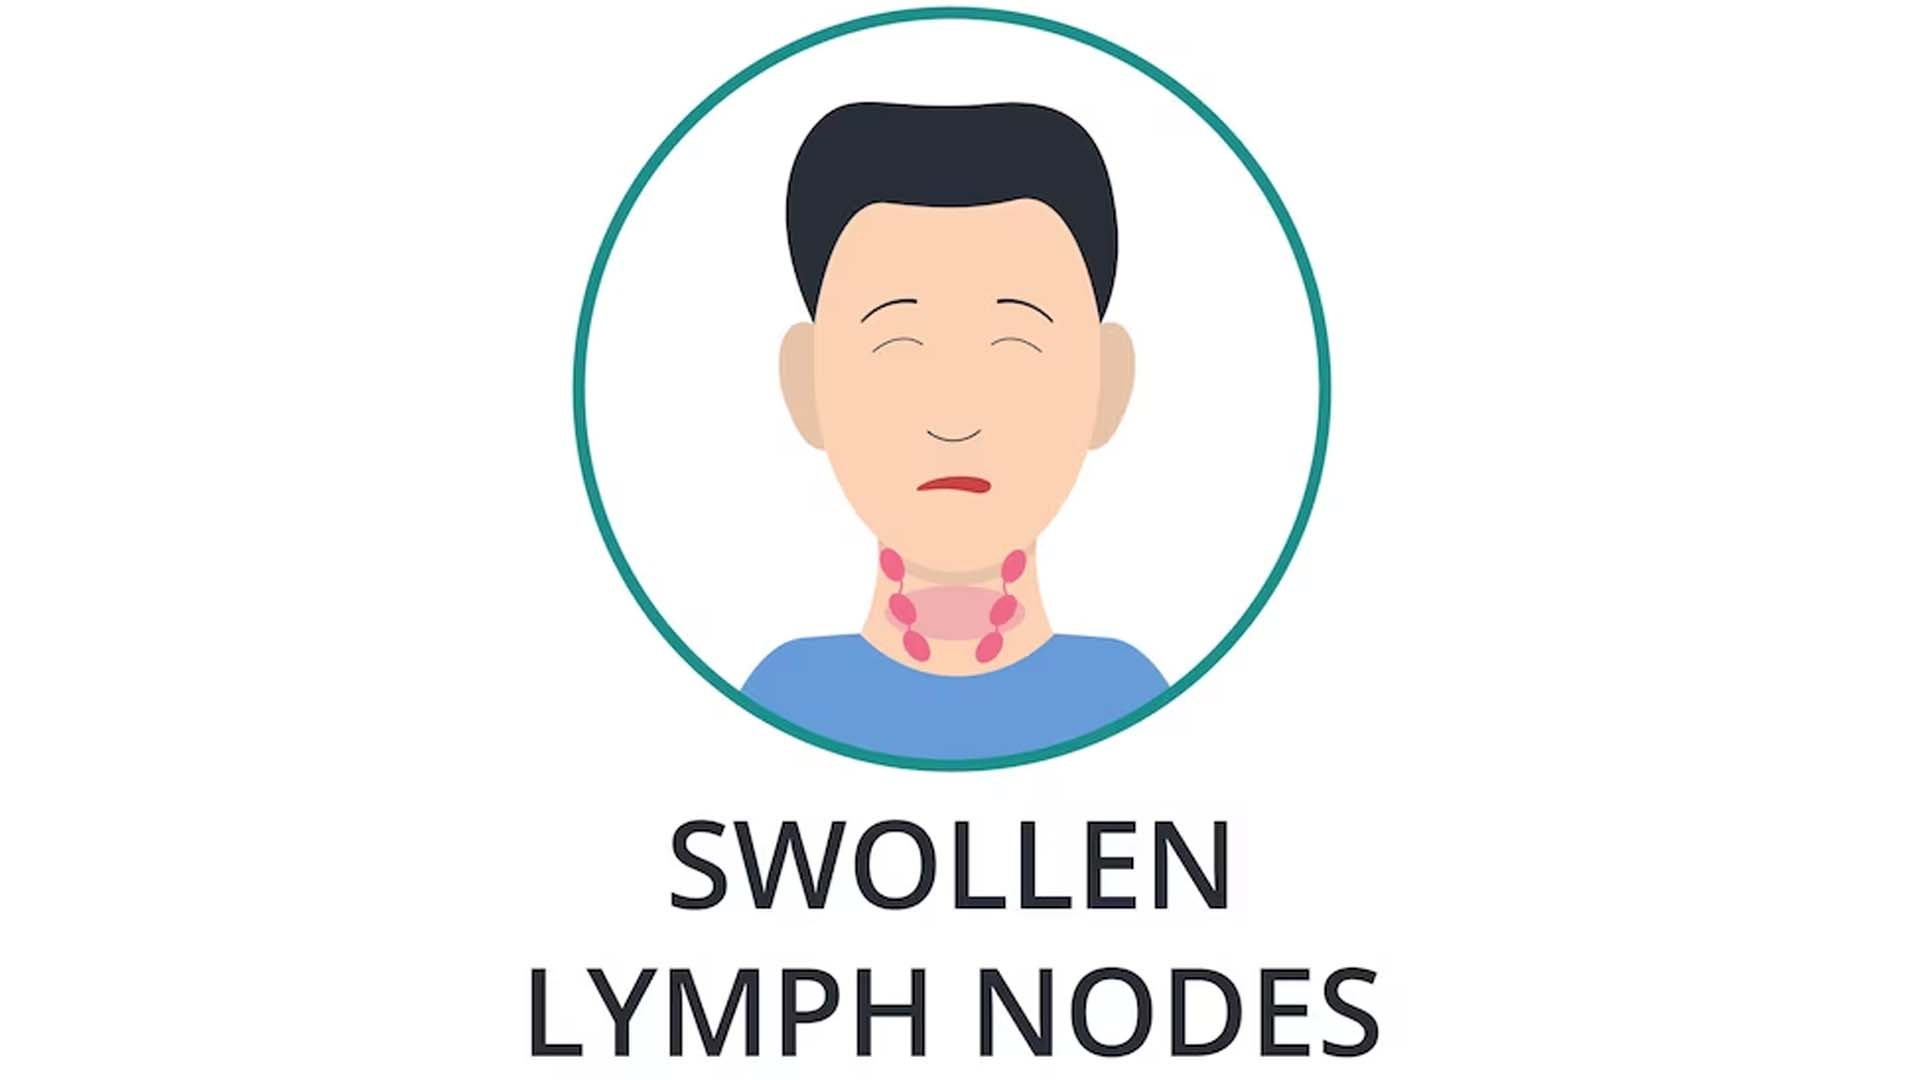 Swollen Lymph Nodes or Lymphadenopathy